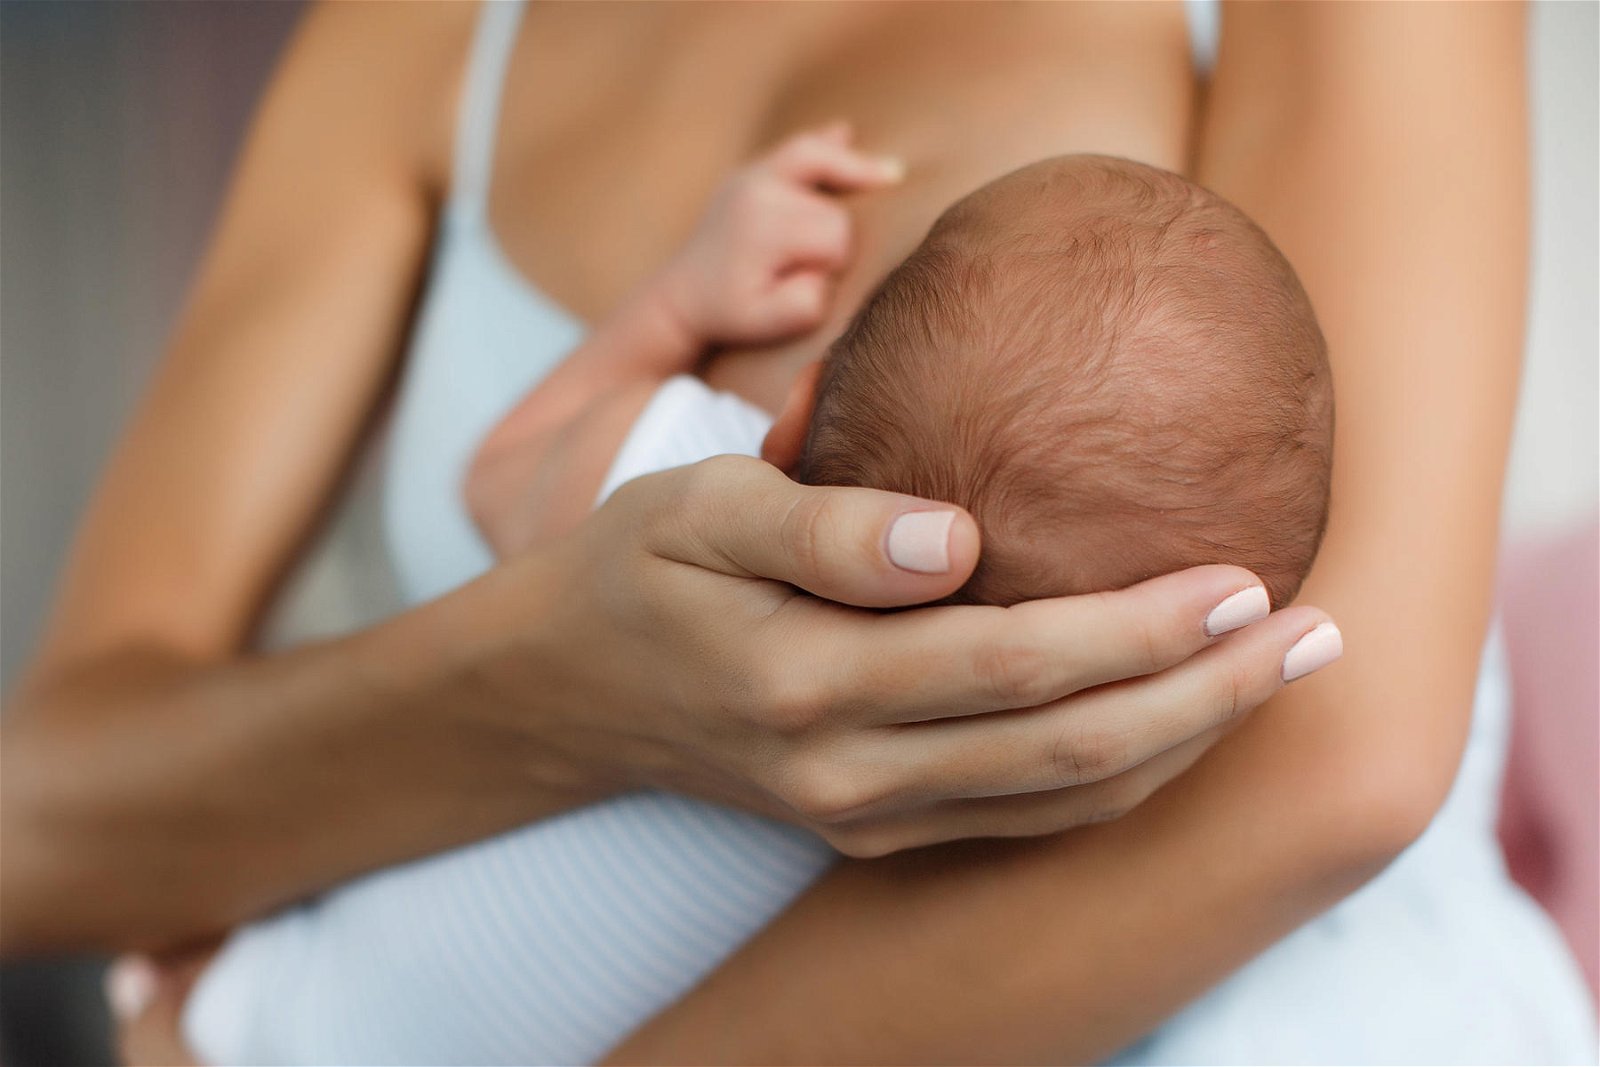 郑国钦解释，在治疗腕管综合症中，即便是哺乳中的新手妈妈或孕妇注射类固醇也是安全的，毋需过于担心。